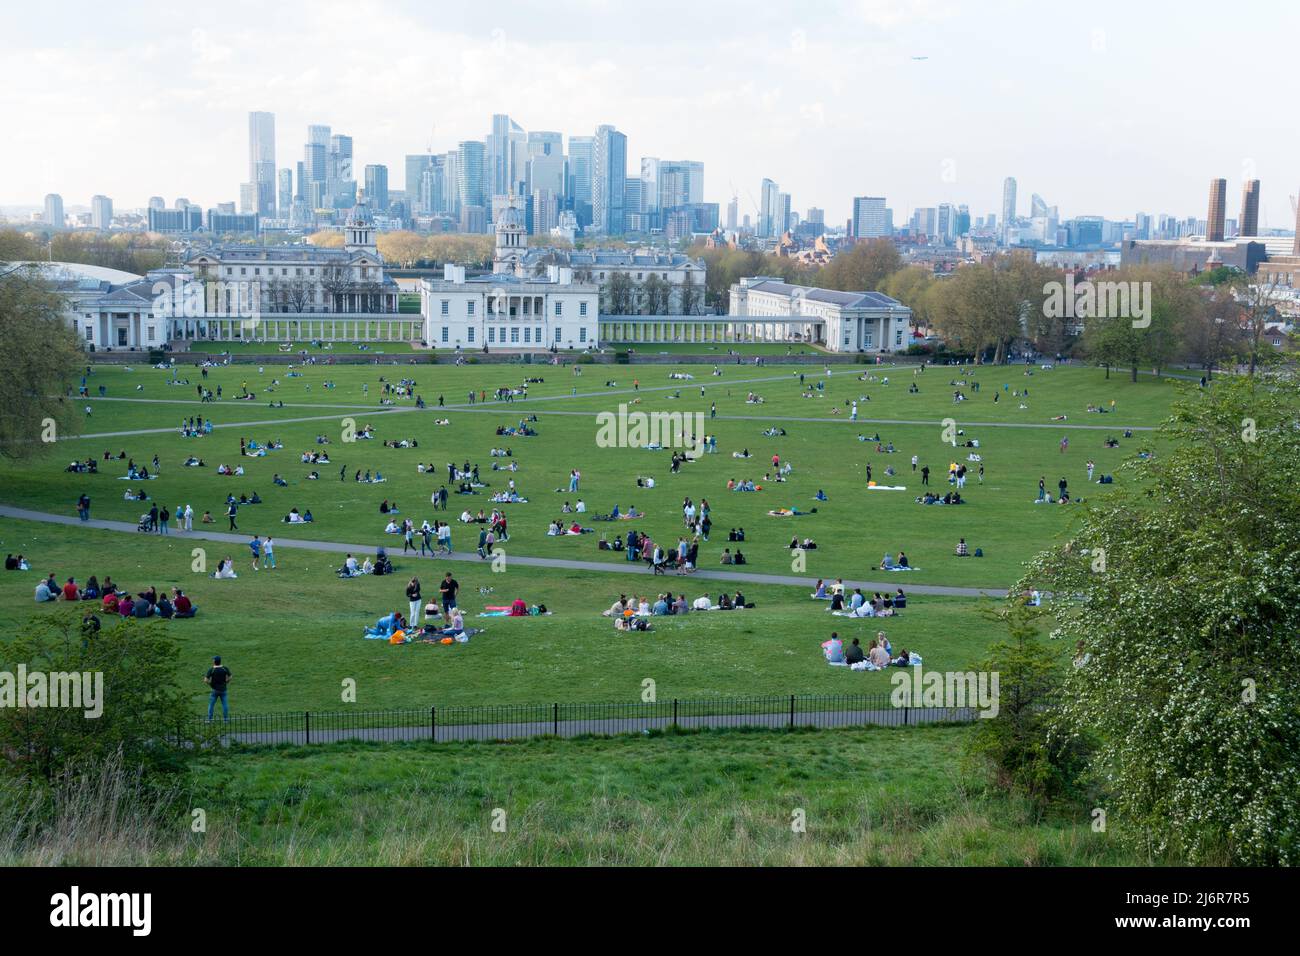 Les visiteurs du Greenwich Park profitent de la vue emblématique des gratte-ciels de l'est de Londres Banque D'Images